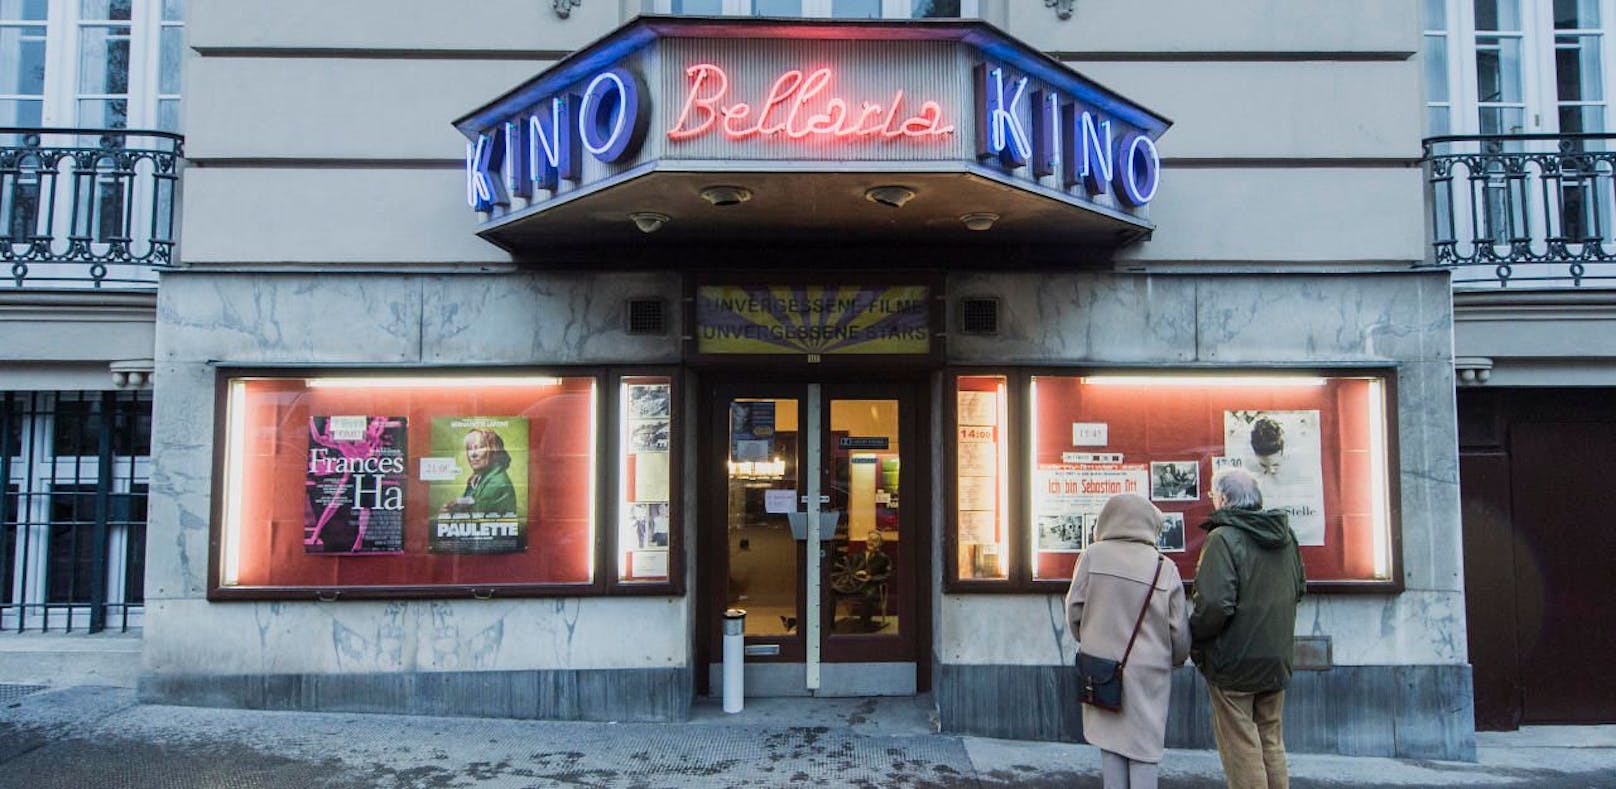 Das Bellaria-Kino in der Museumstraße 3 ist eines der letzten privat geführten Kinos Wiens. Mehr als 135.000 Euro kamen für den Erhalt zusammen.